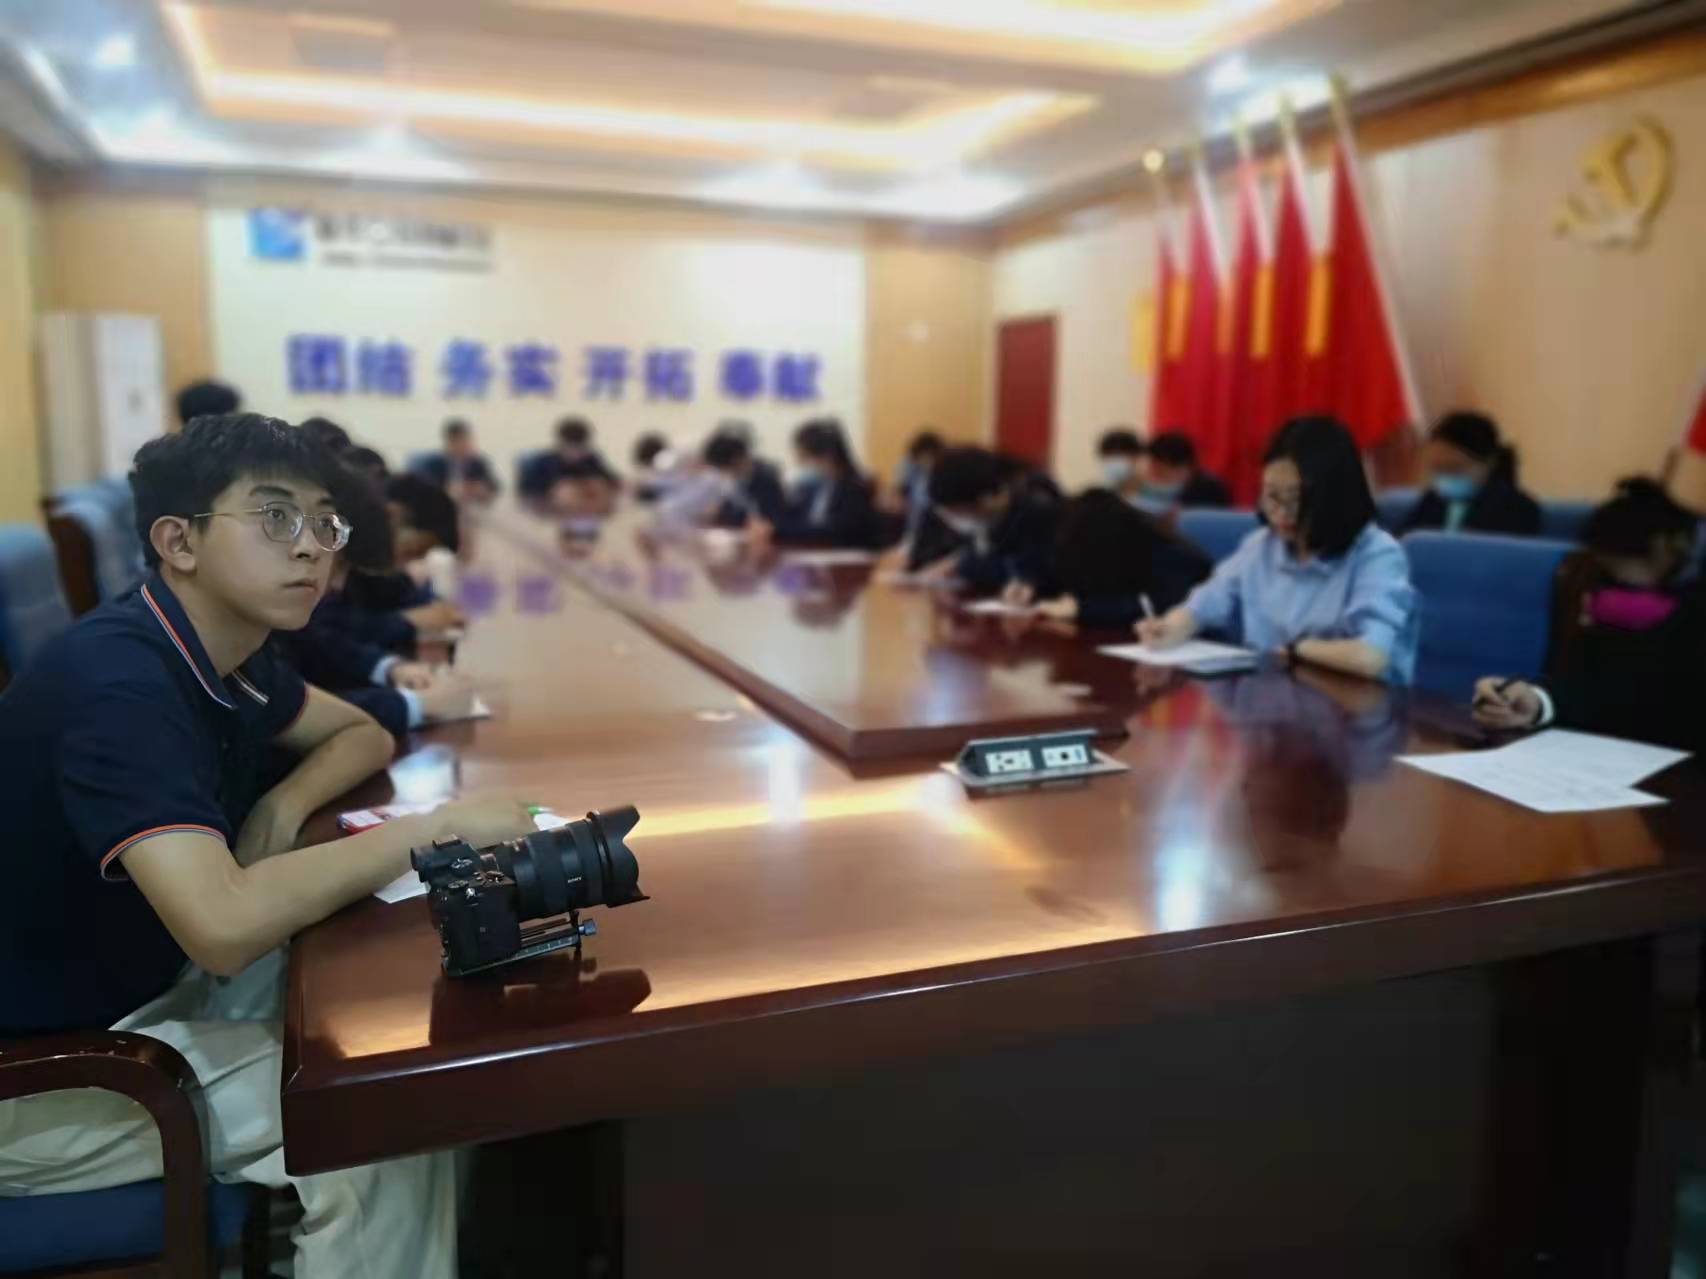 庆祝中国共产主义青年团成立100周年大会